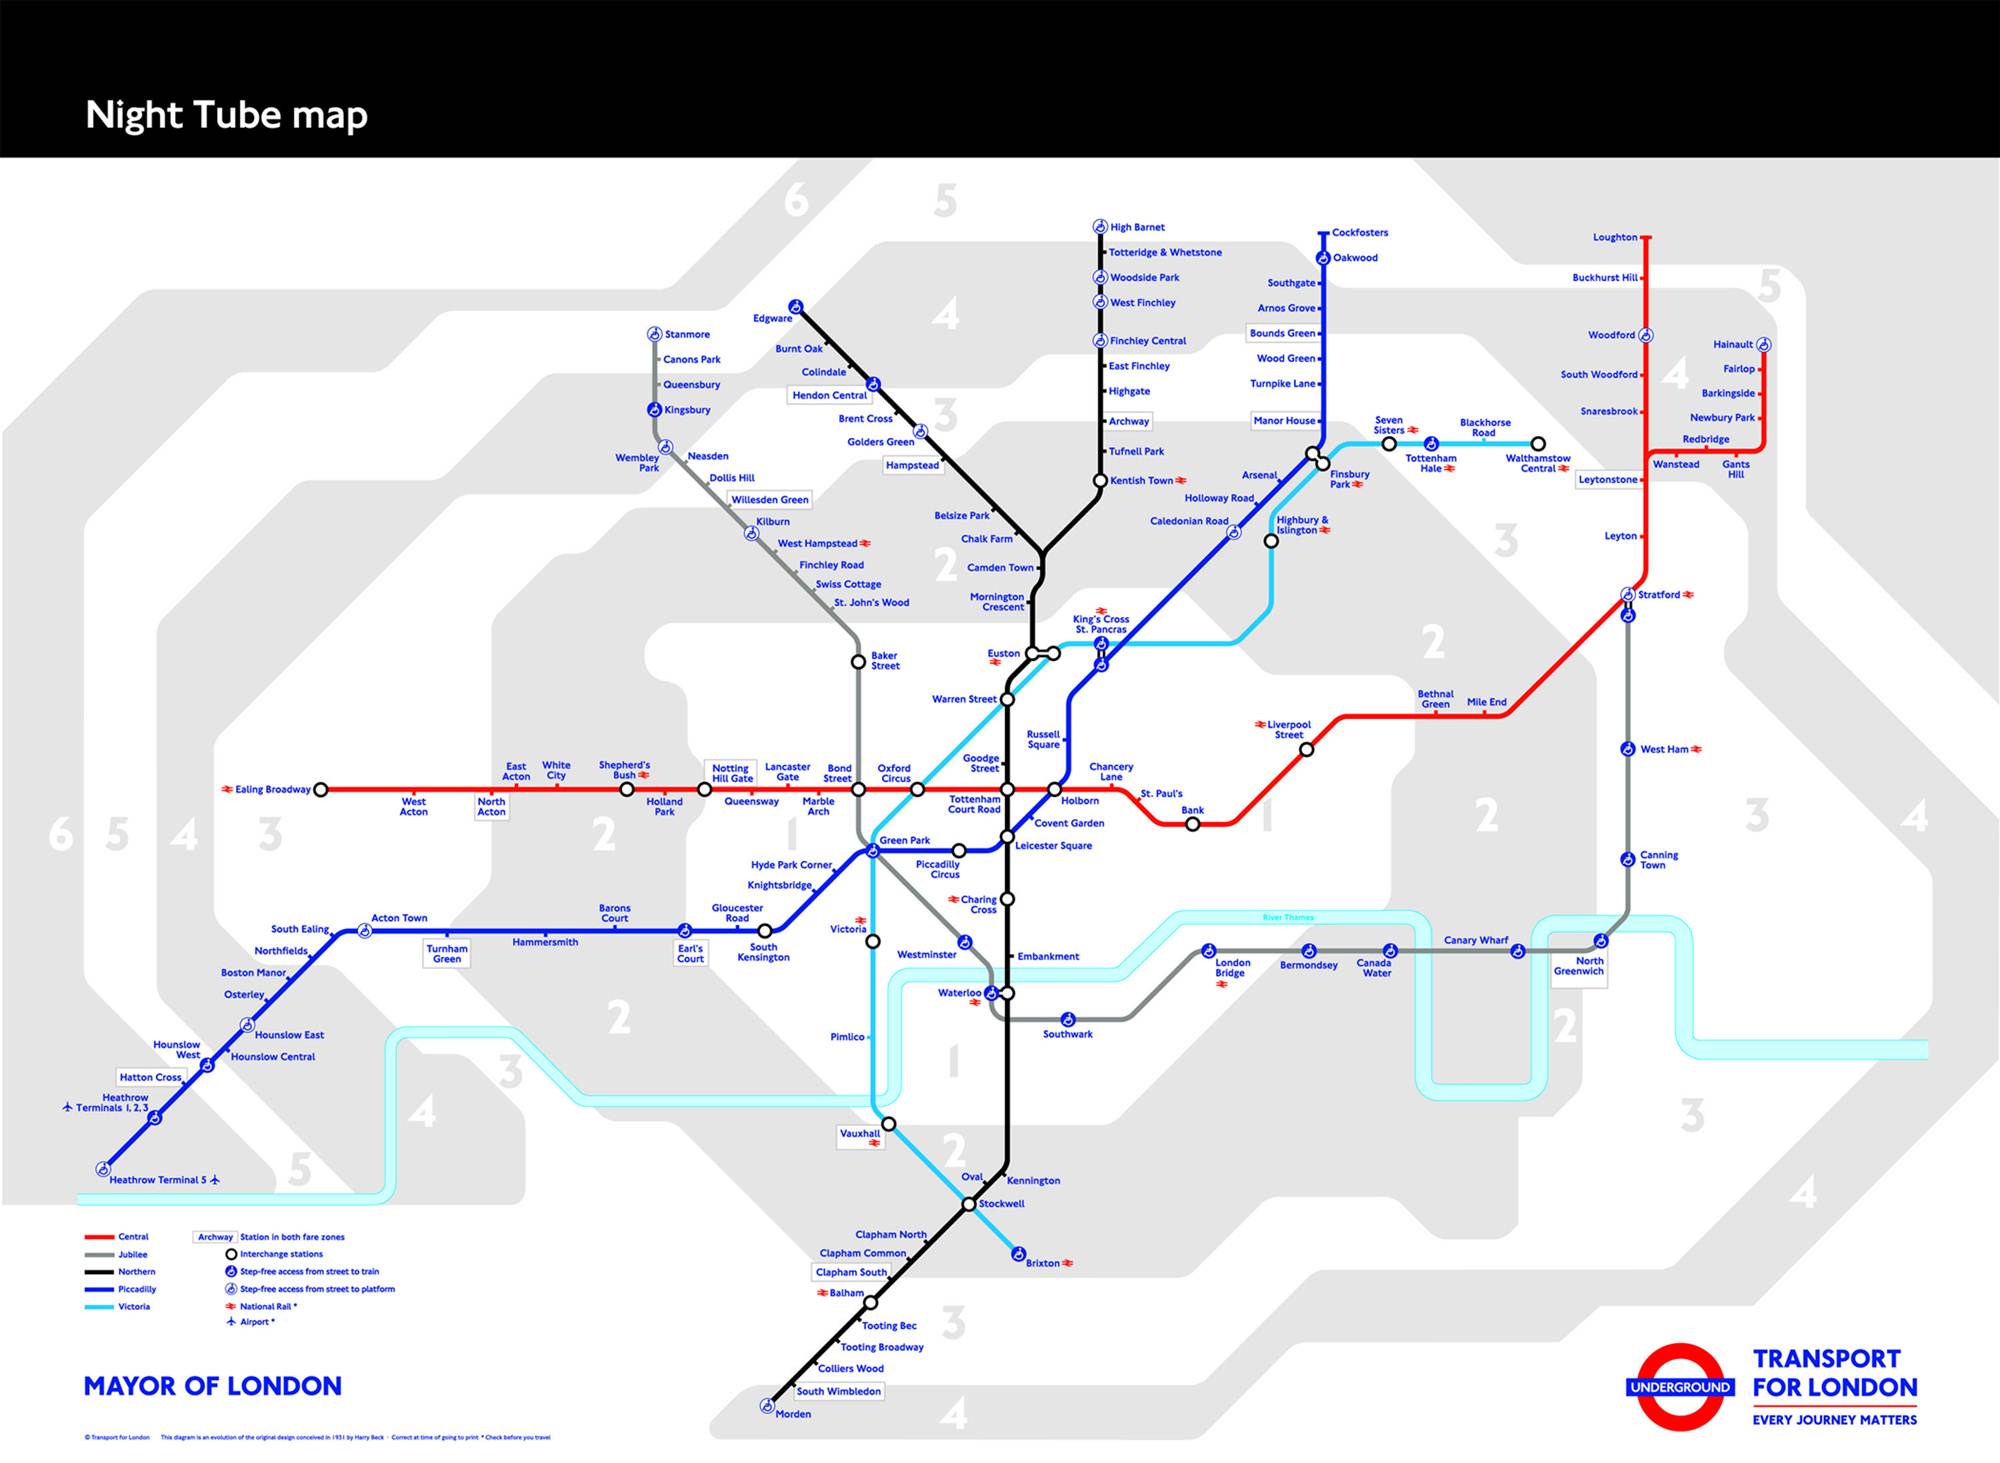 Night Tube em Londres - 5 linhas a funcionar 24 horas